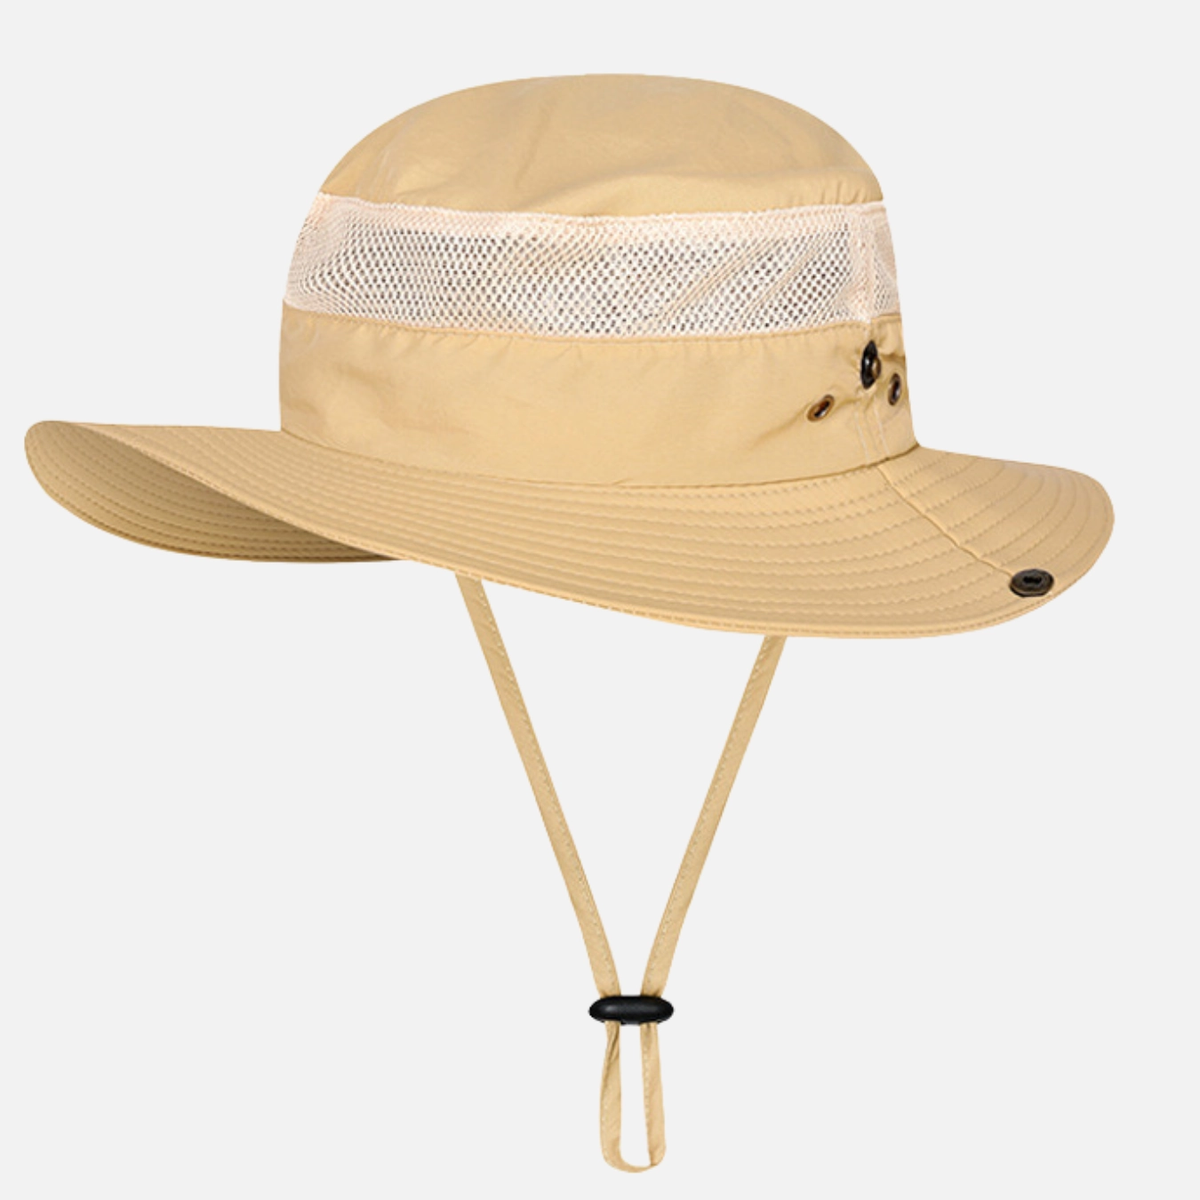 Voyage כובע טיולים רחב שוליים - חאקי פריט שני ב - 35% הנחה 